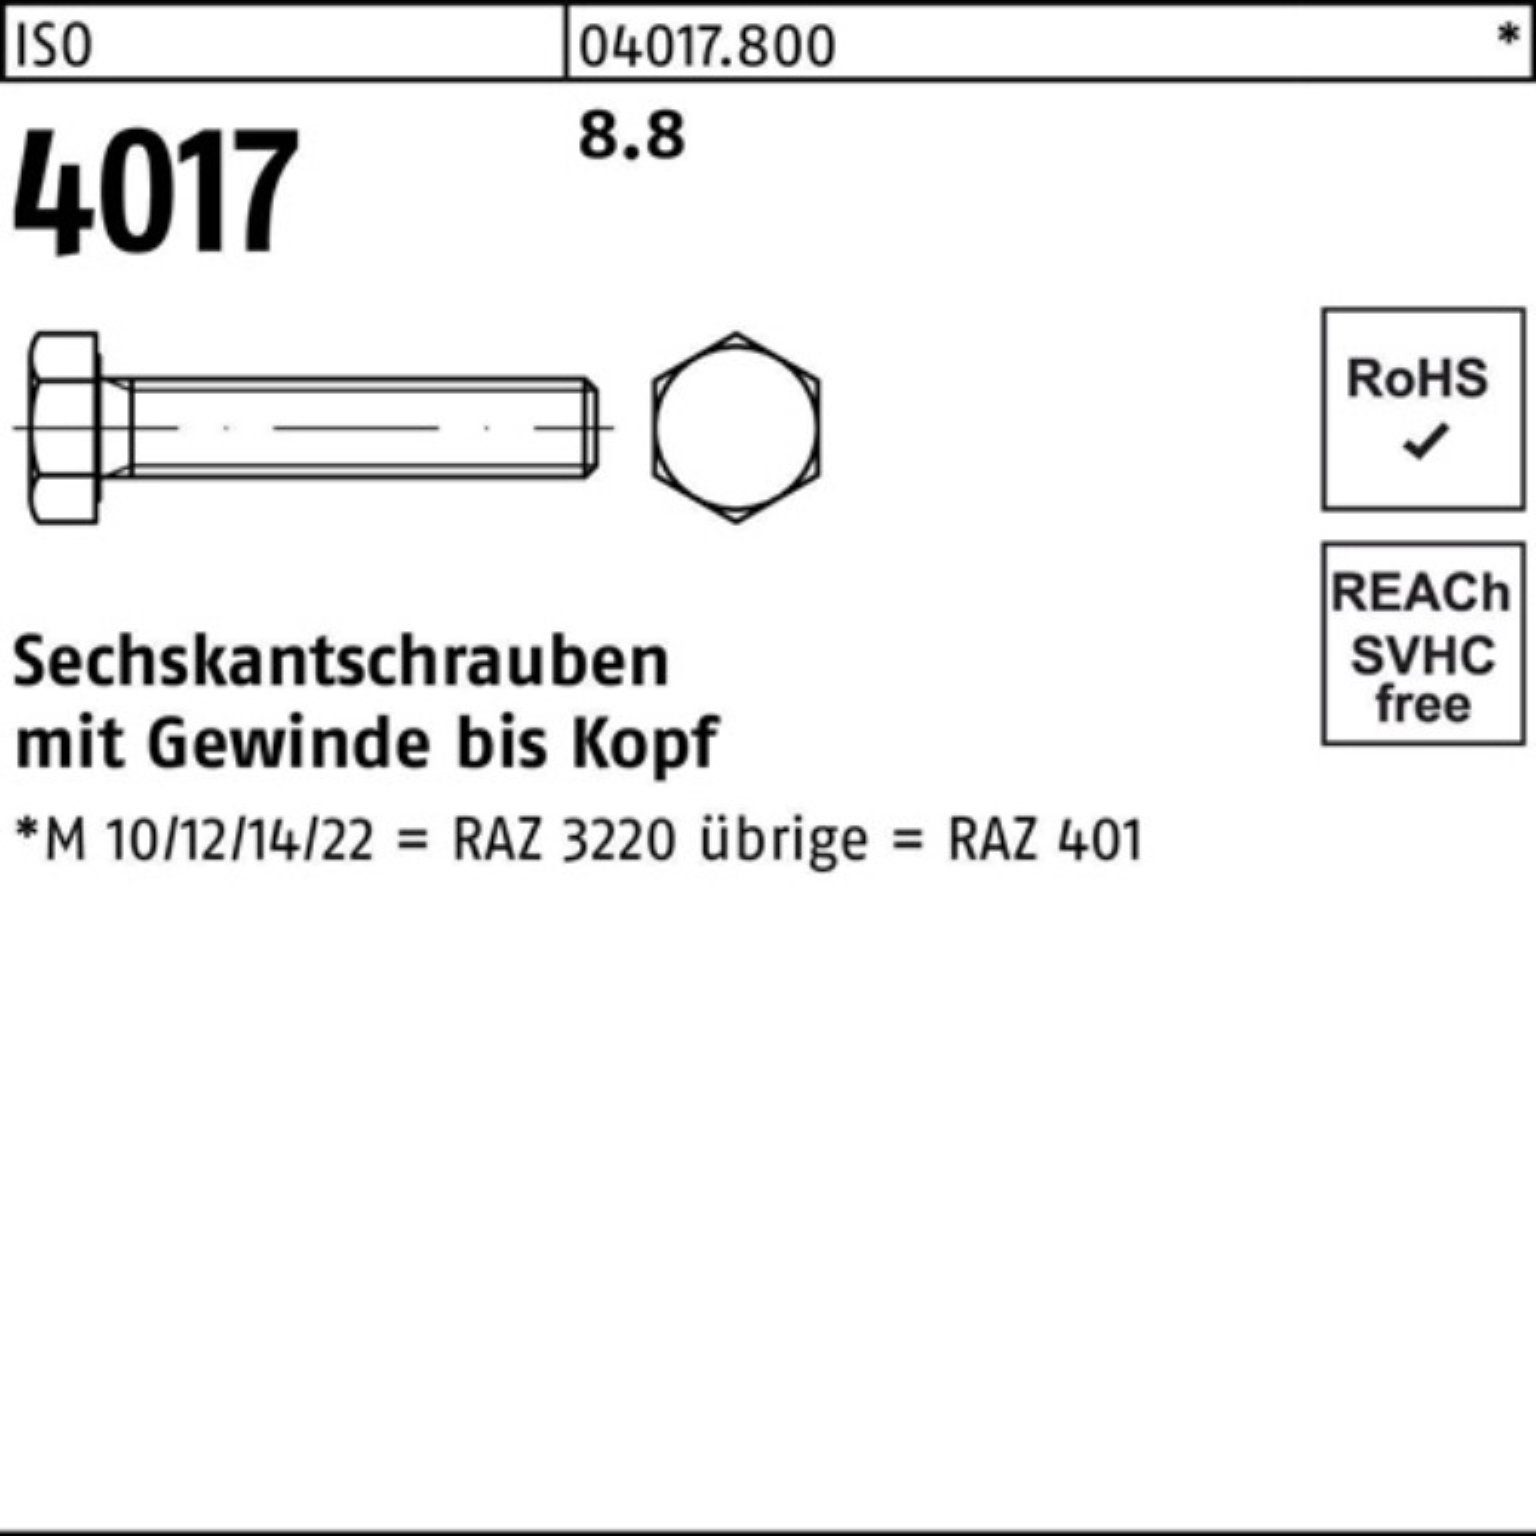 Pack 16 4017 ISO Sechskantschraube M3x VG 8.8 100er Bufab Sechskantschraube ISO 401 100 Stück